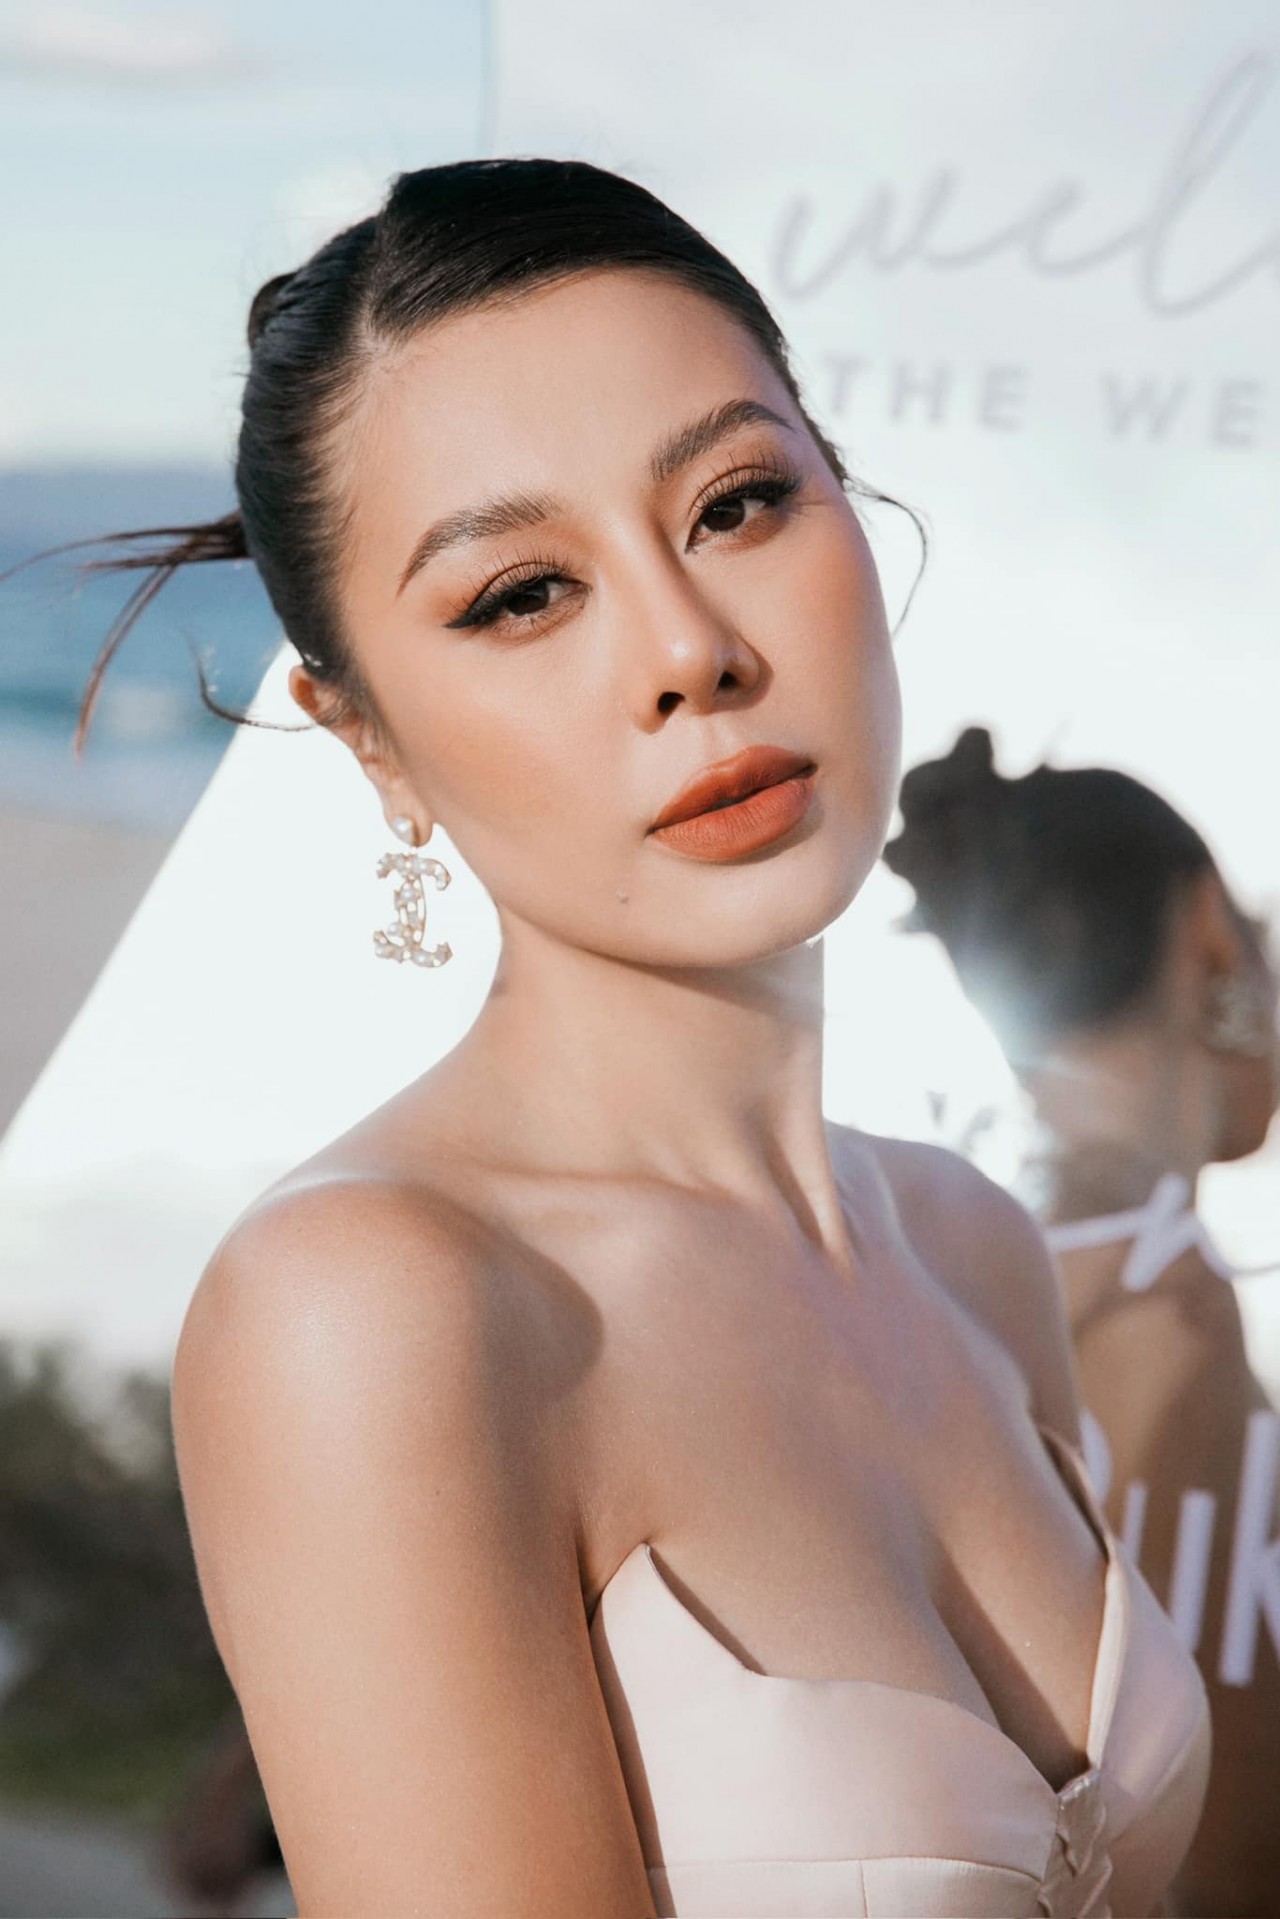 Dàn diễn viên, người mẫu 'đổ bộ' đám cưới Puka - Gin Tuấn Kiệt